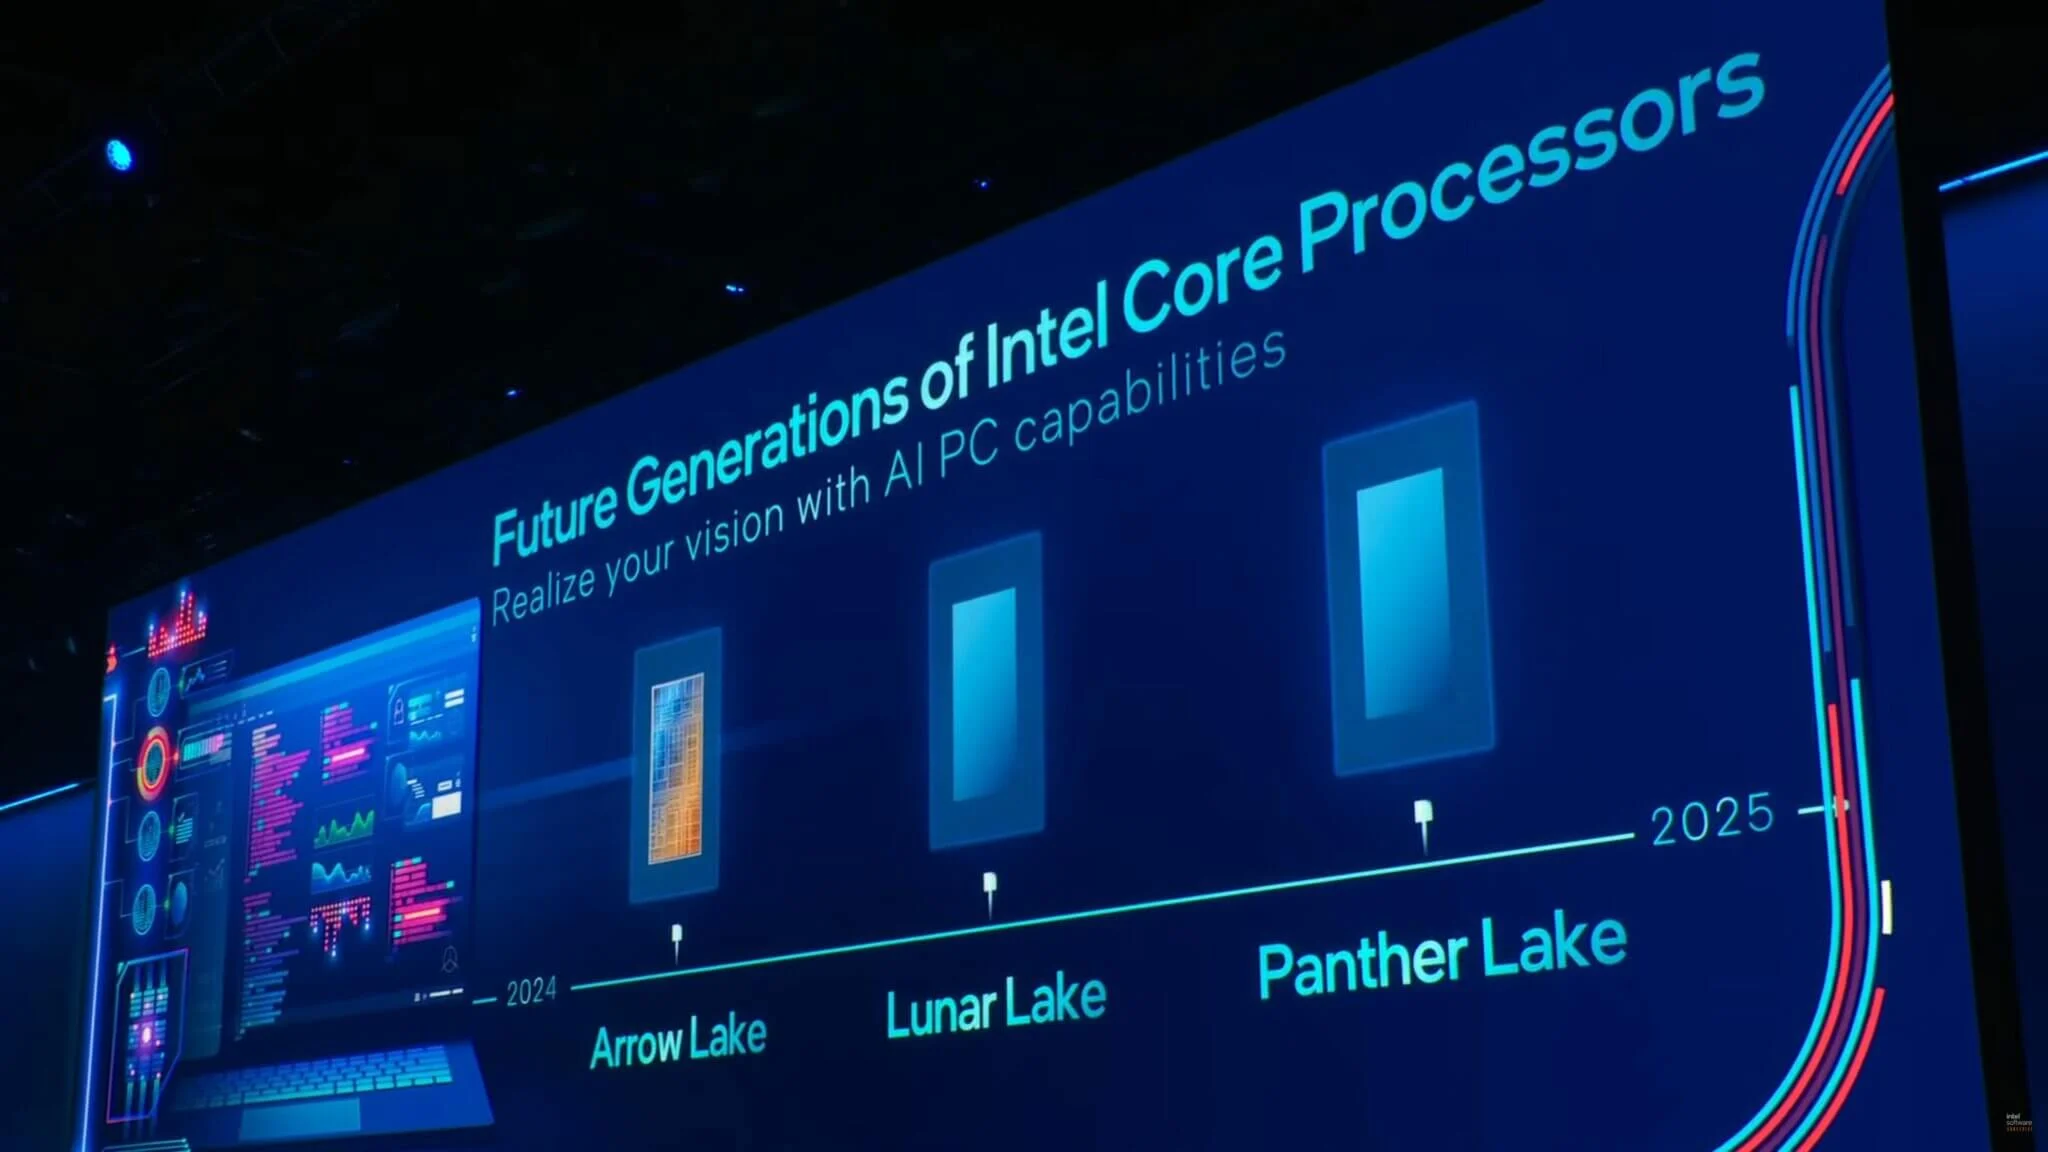 Intel-Arrow-Lake-Lunar-Lake-Panther-Lake-CPUs-2048x1152.jpg